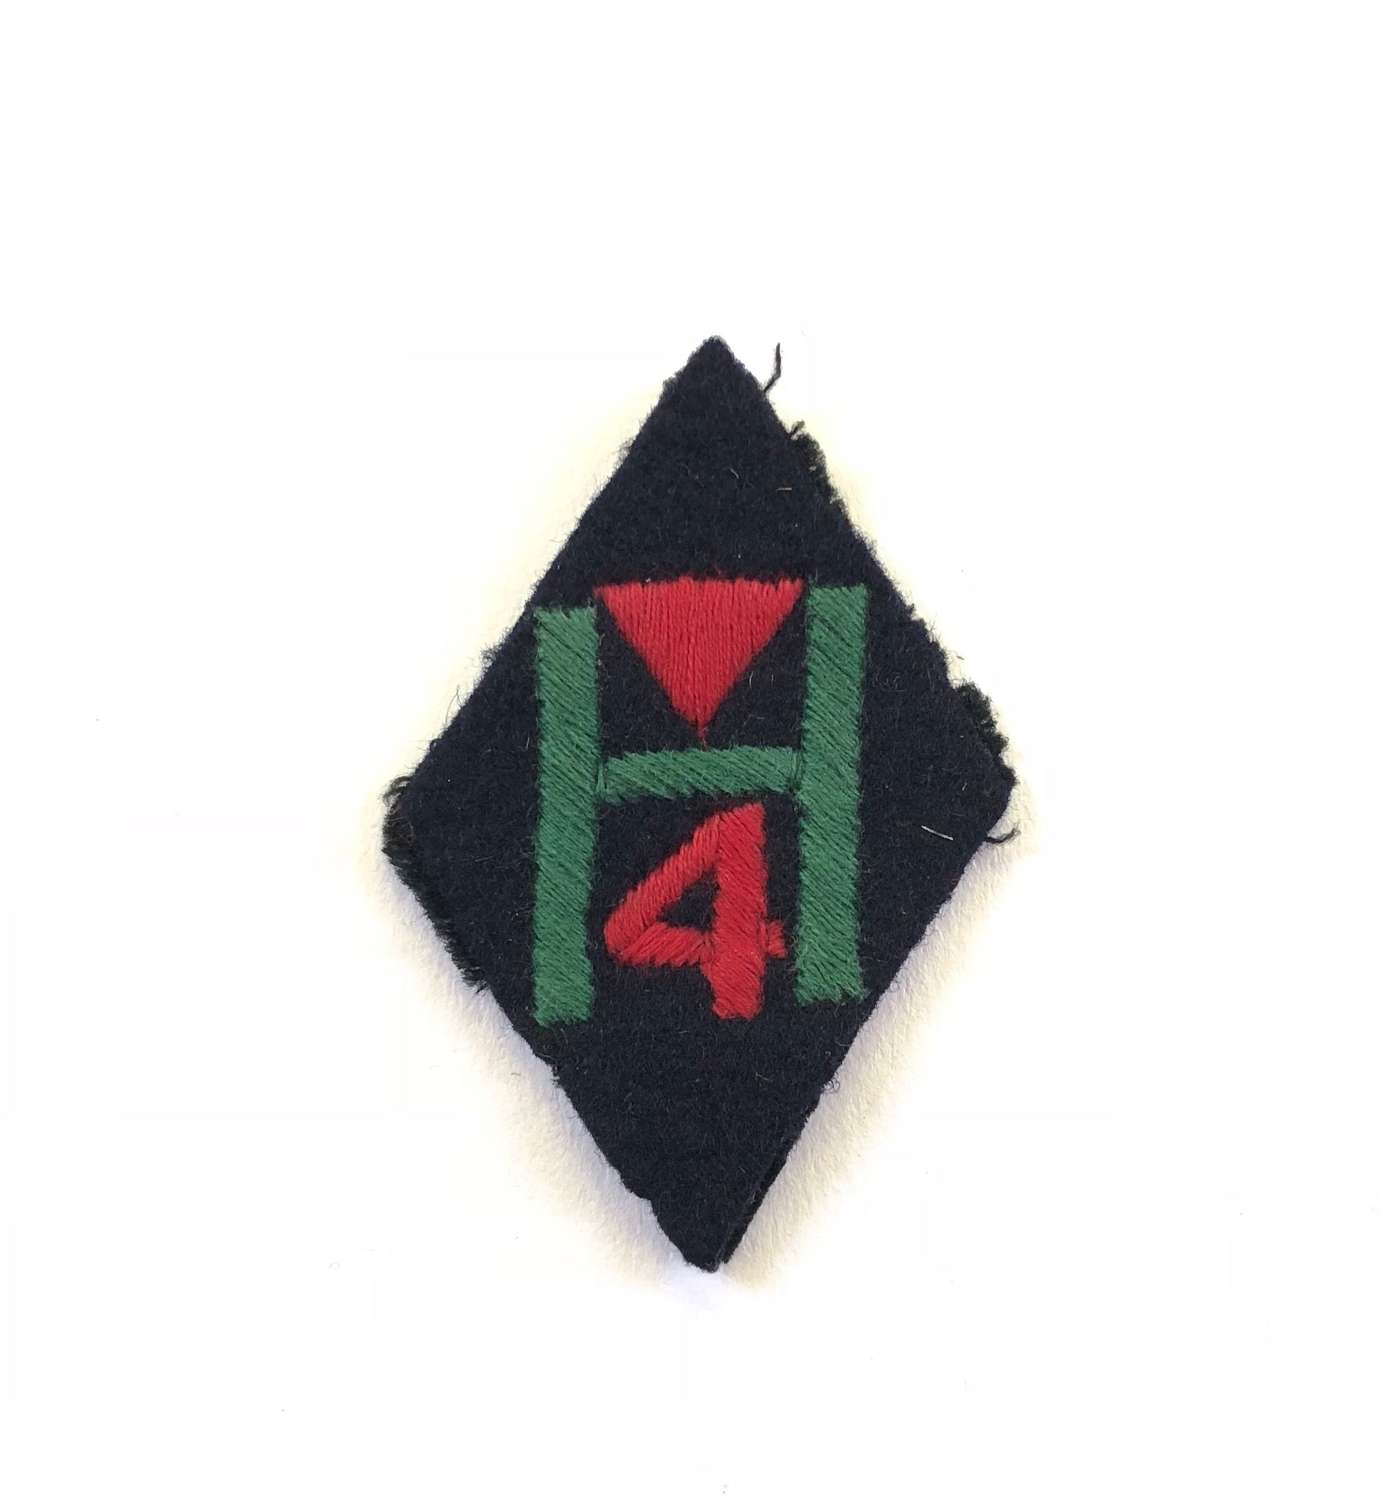 WW2 76th Highland Field Regiment Royal Artillery Cloth Badge.